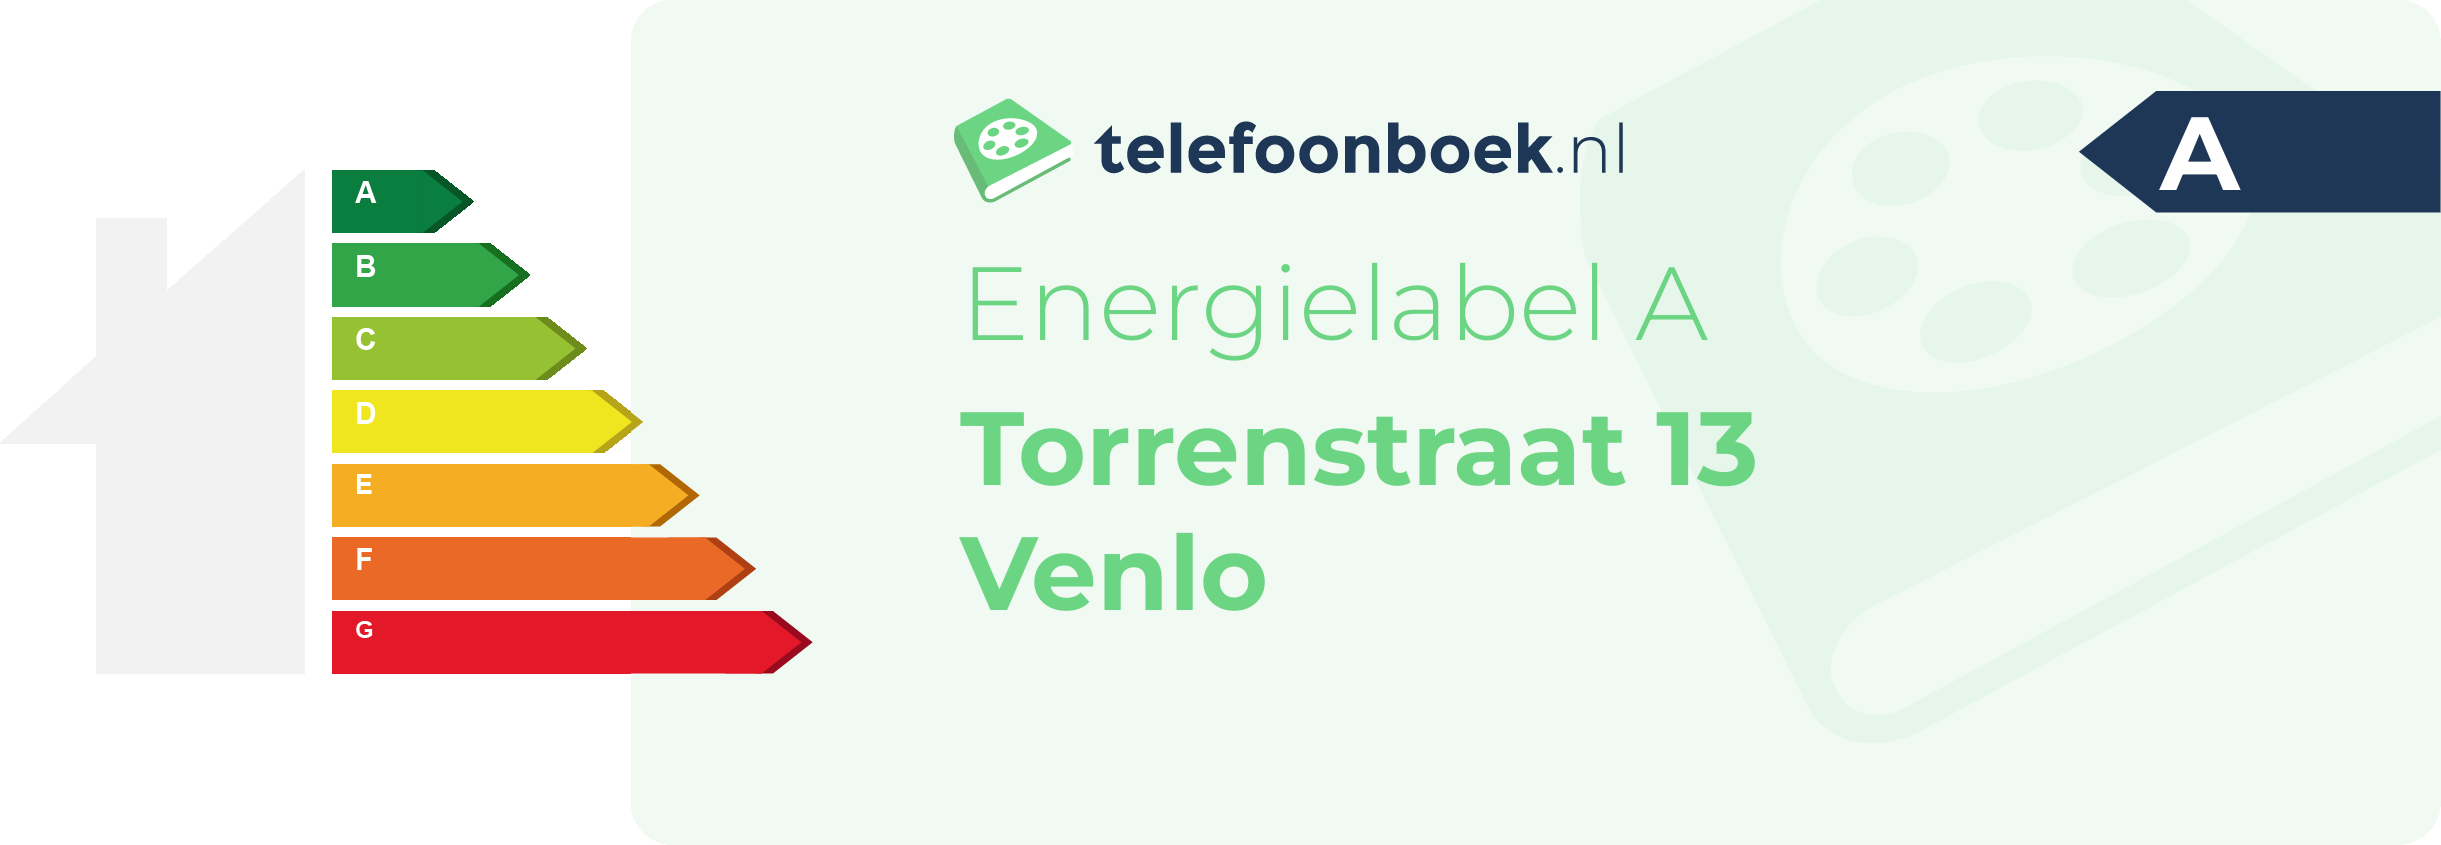 Energielabel Torrenstraat 13 Venlo